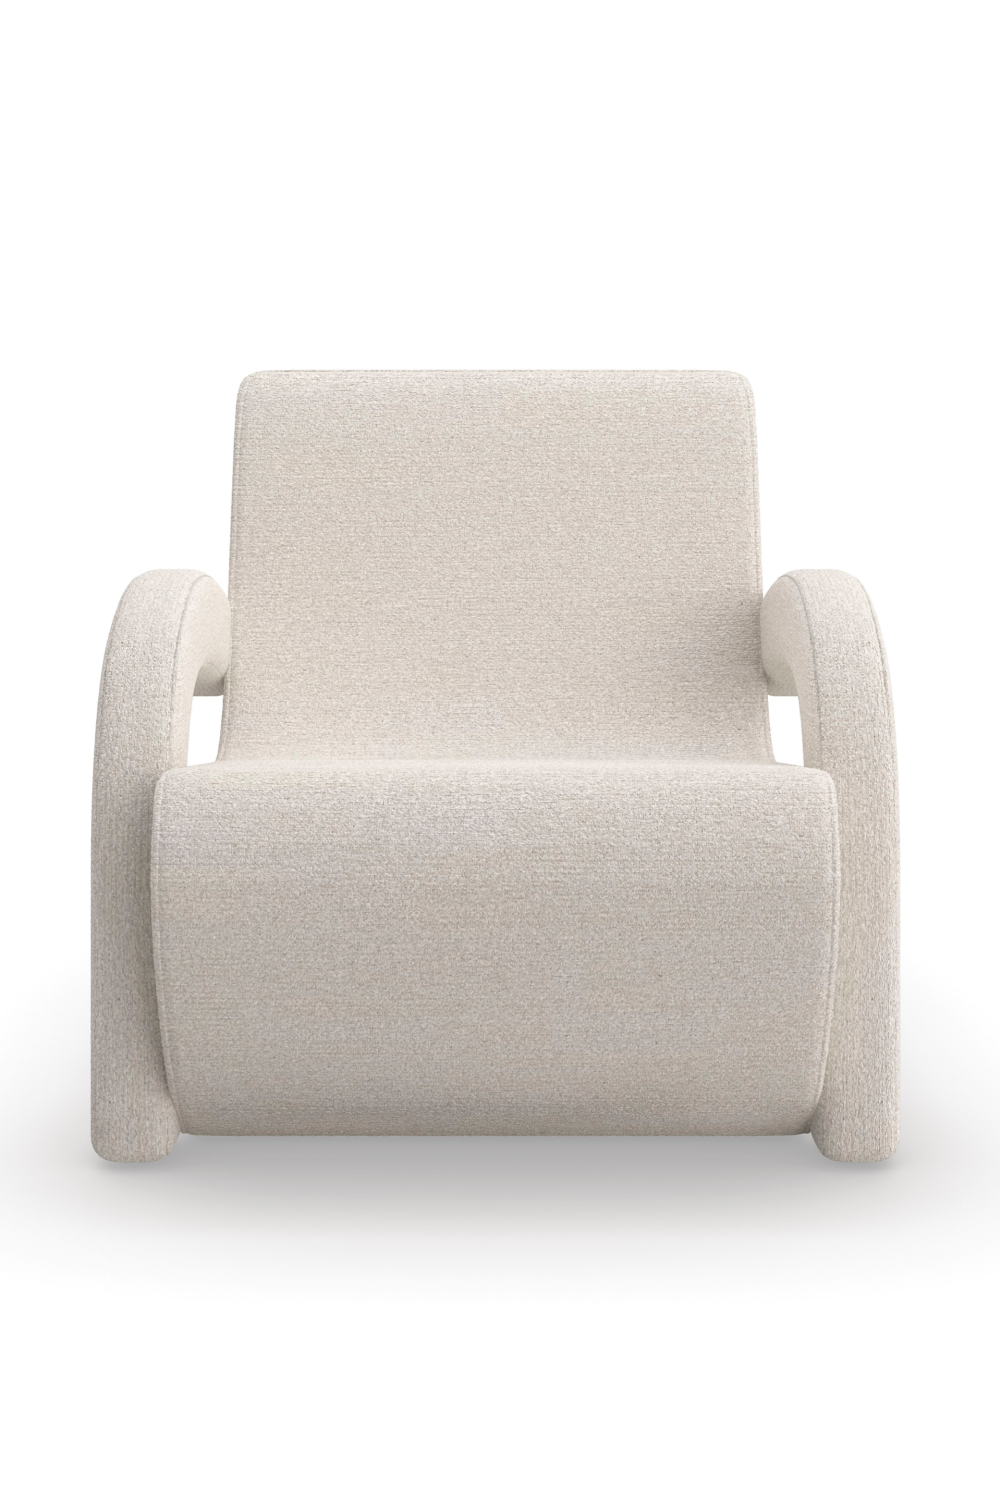 White Bouclé Accent Chair | Caracole Leo | Oroa.com